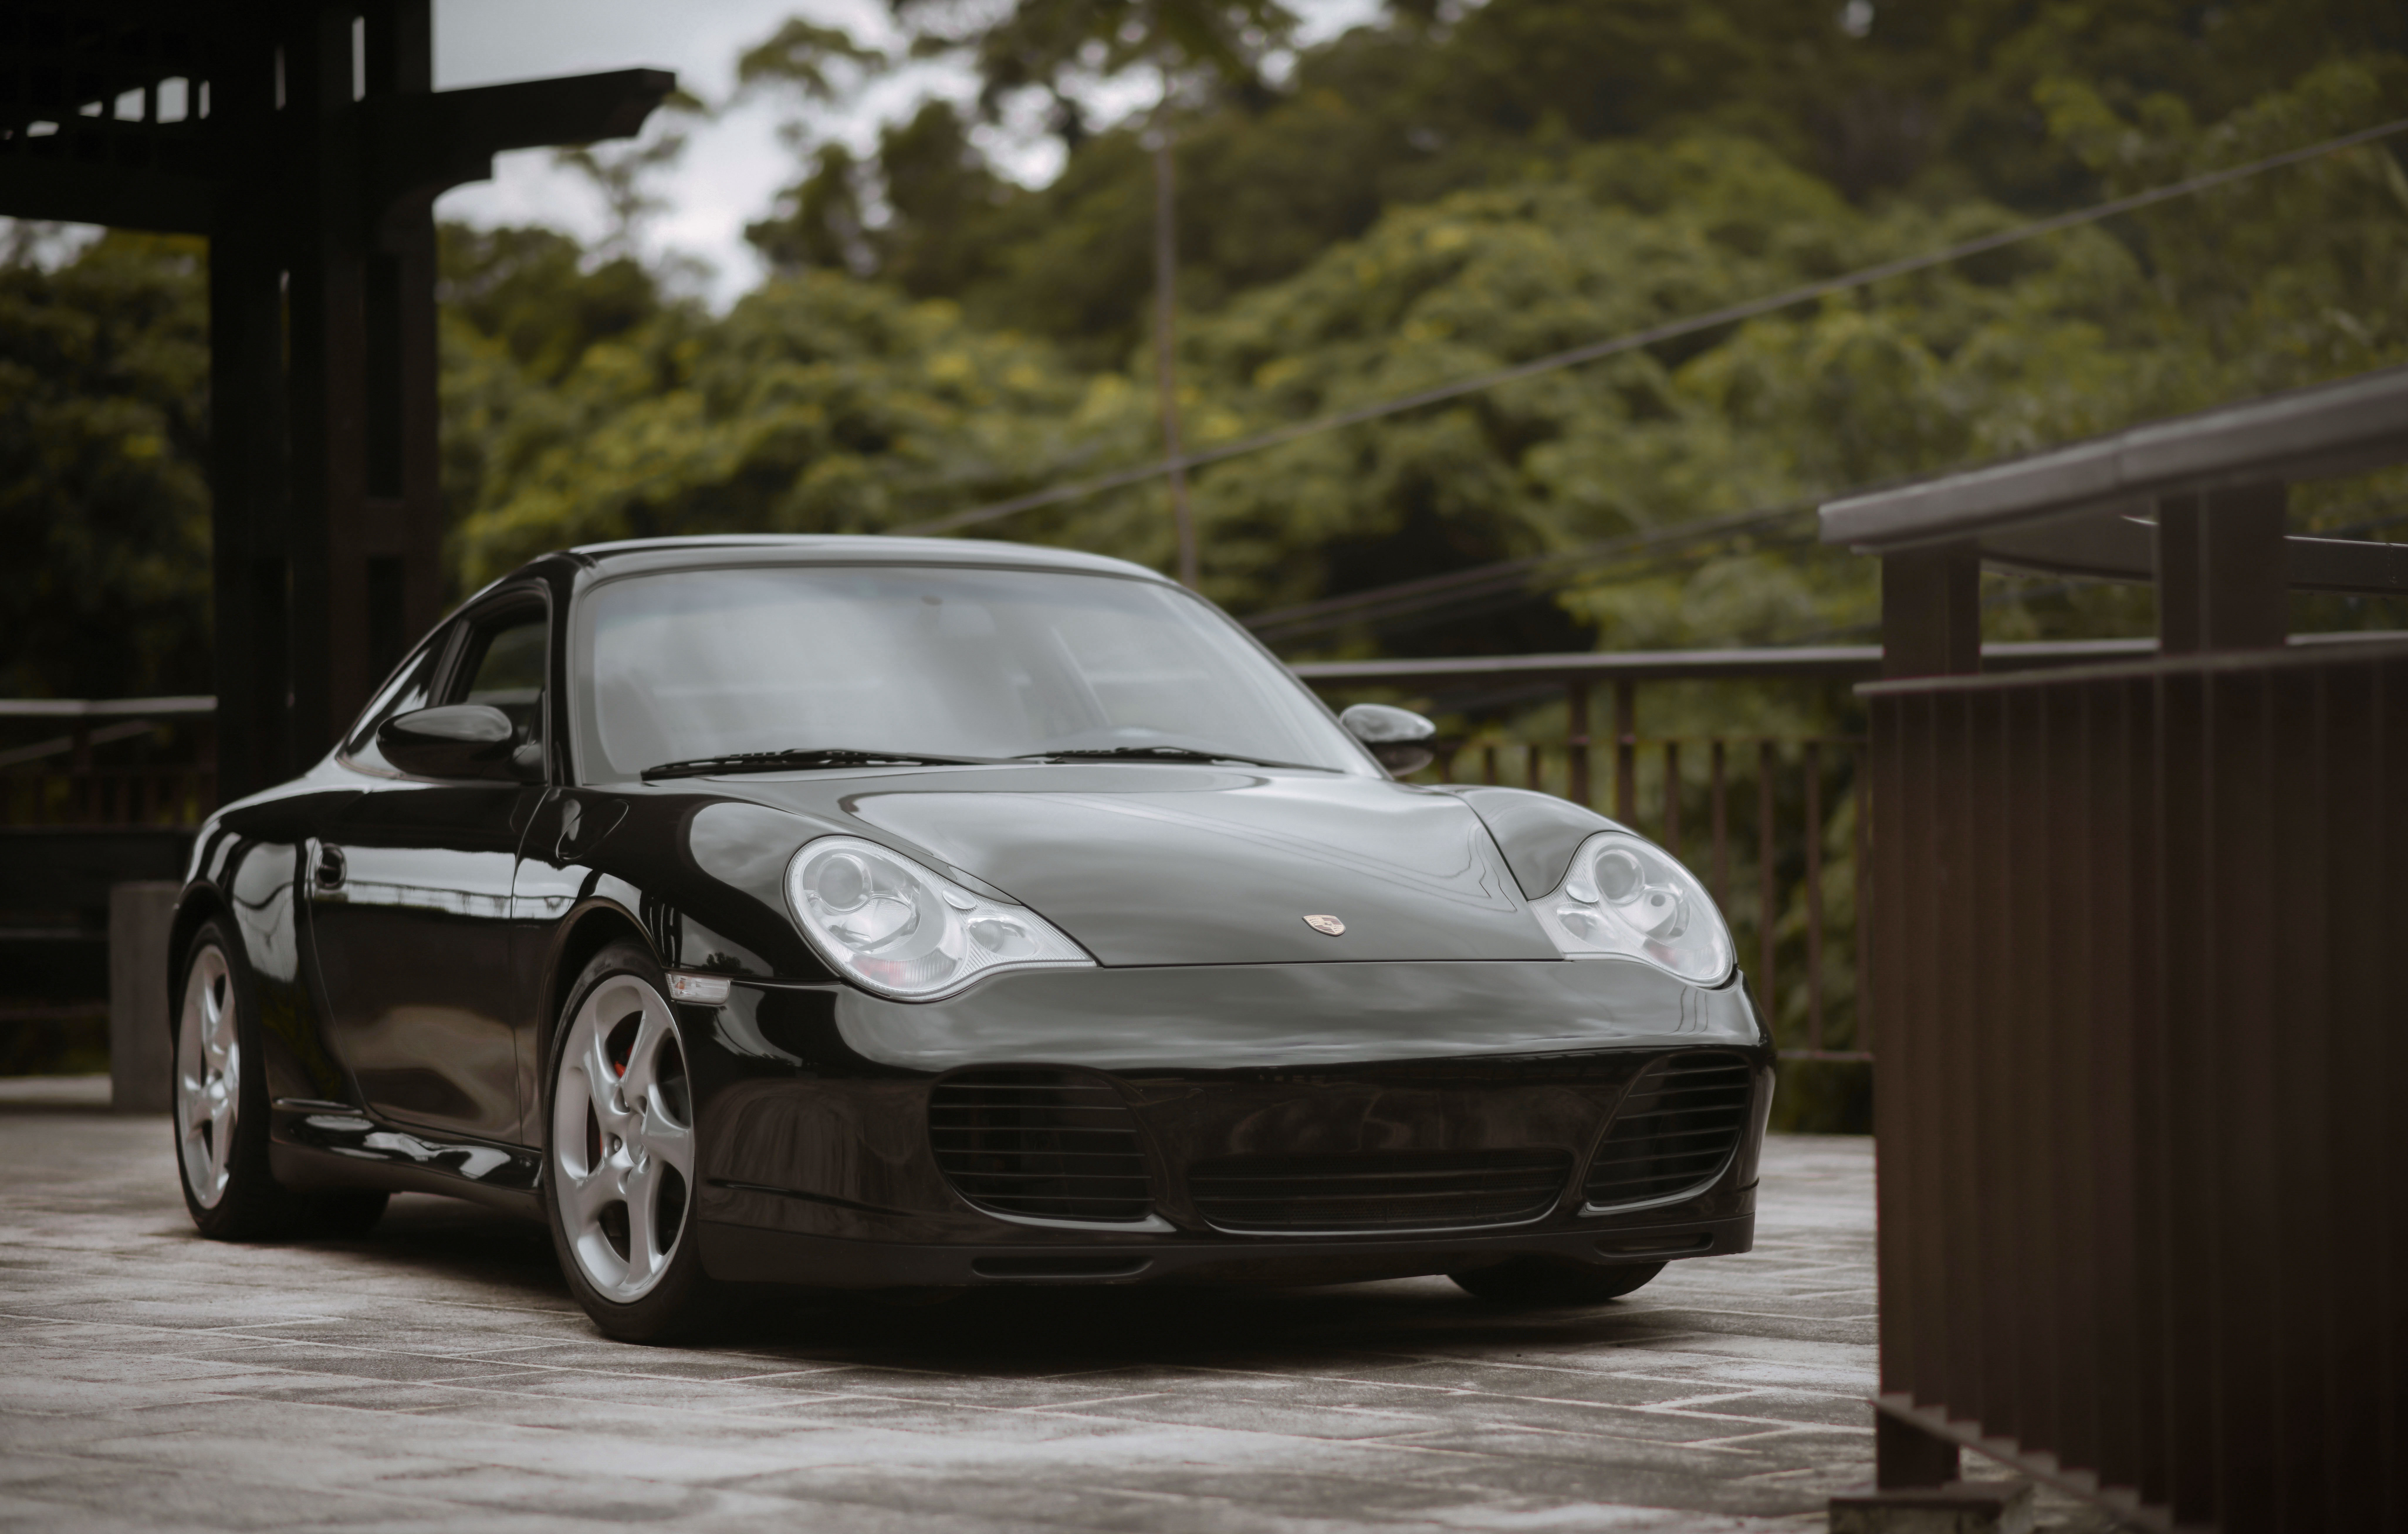 Популярные заставки и фоны Porsche 911 Carrera 4S на компьютер